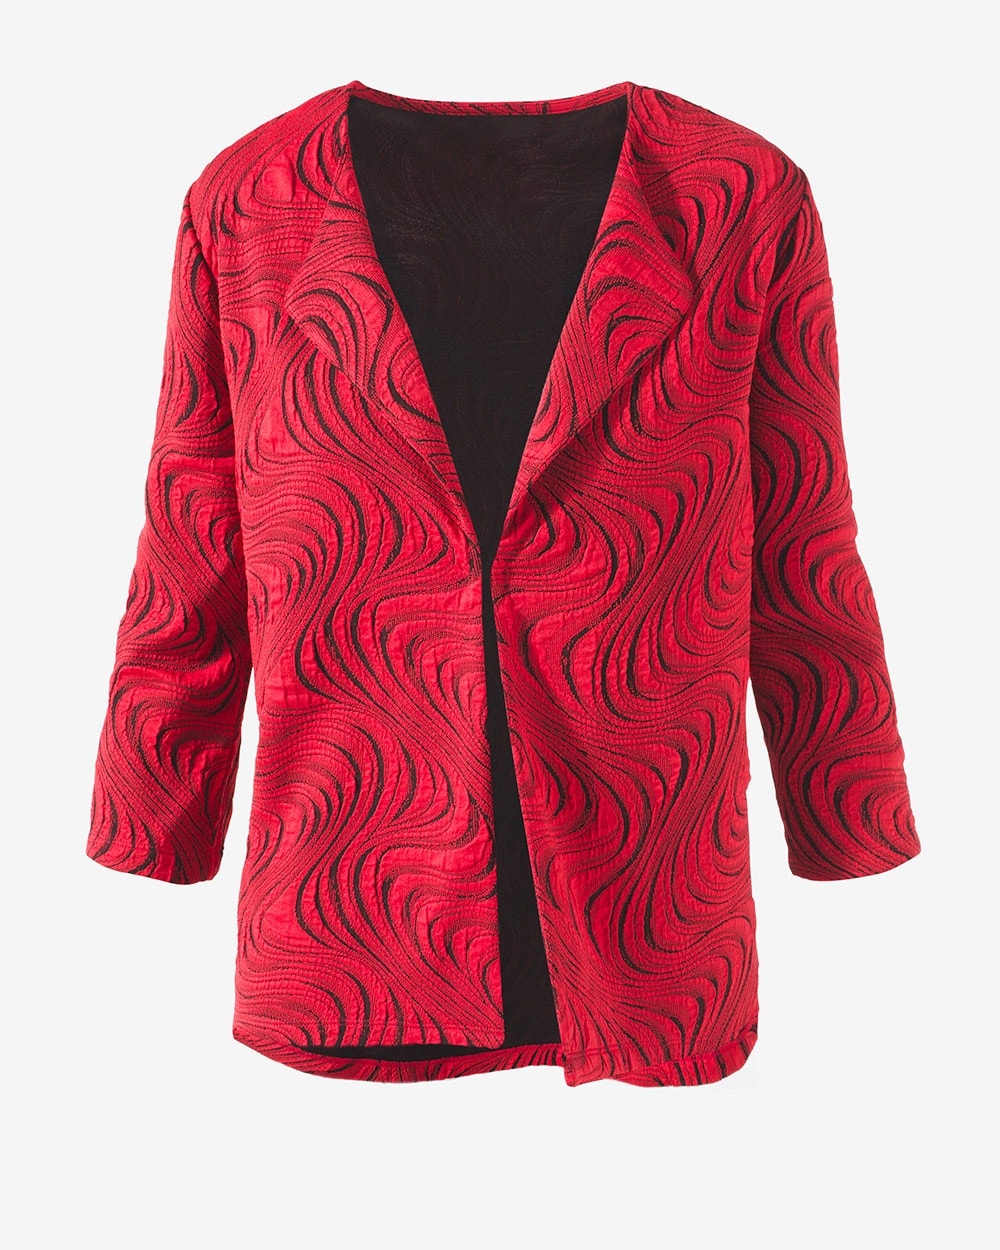 Easywear Rojo Swirls Pattern Jacket